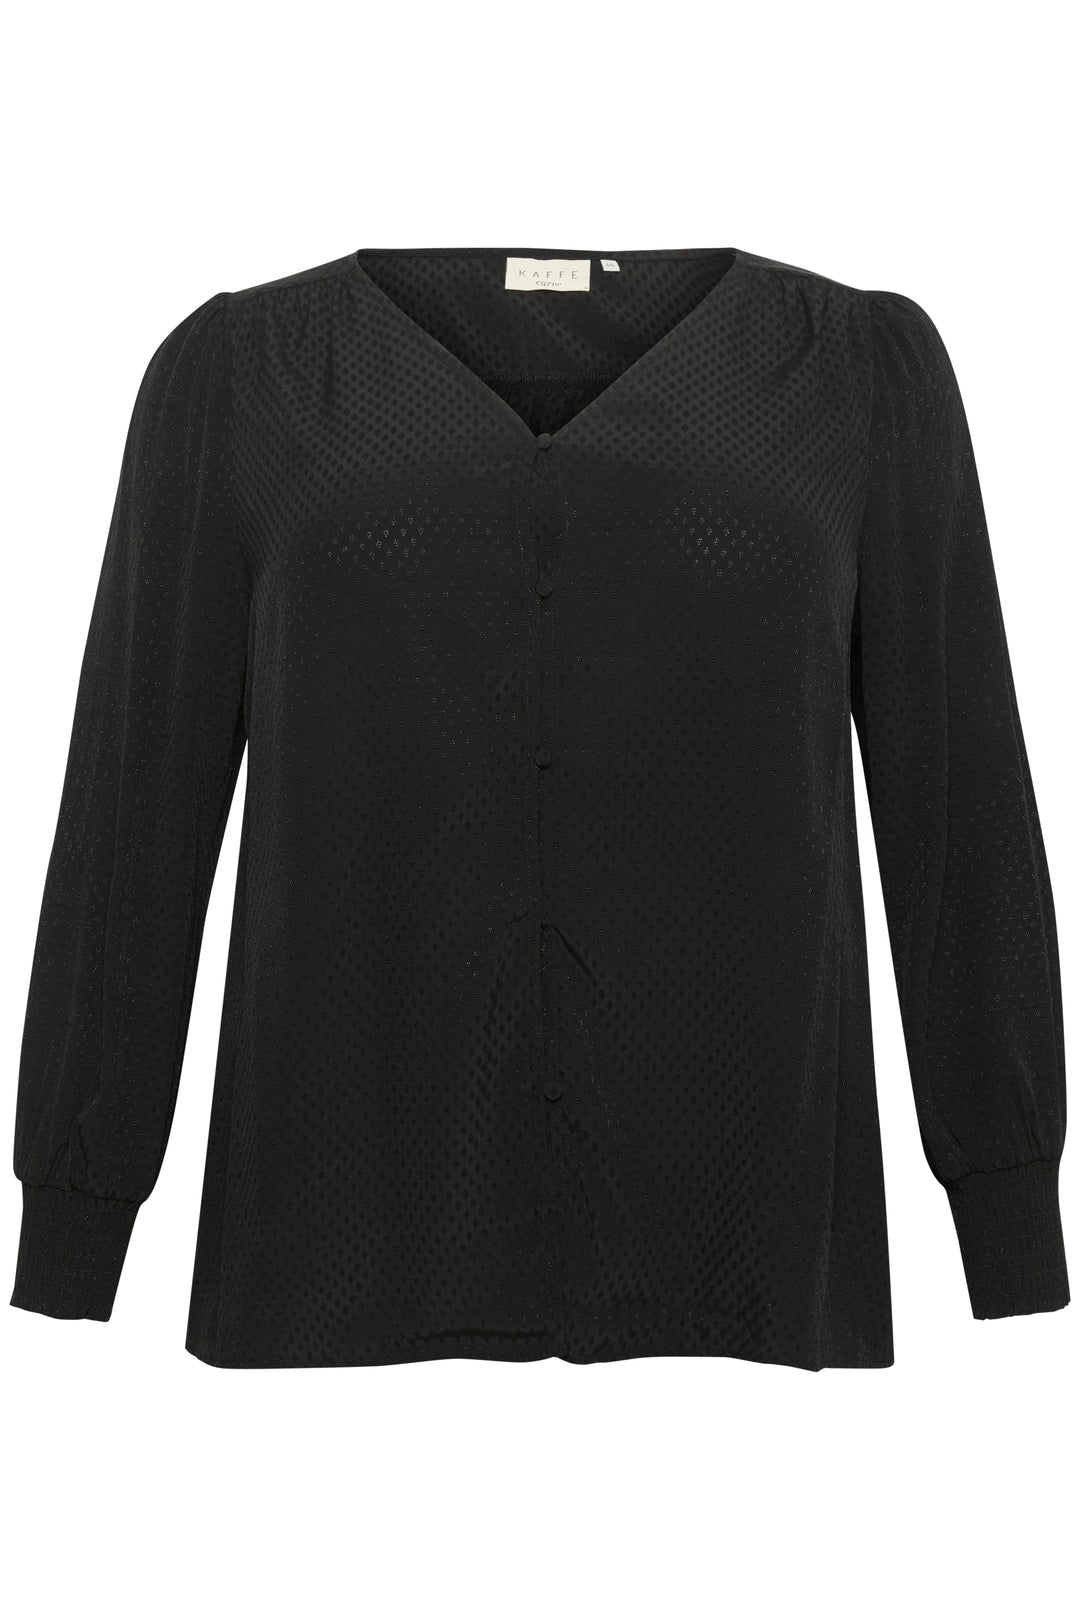 zwarte blouse met toon op toon print